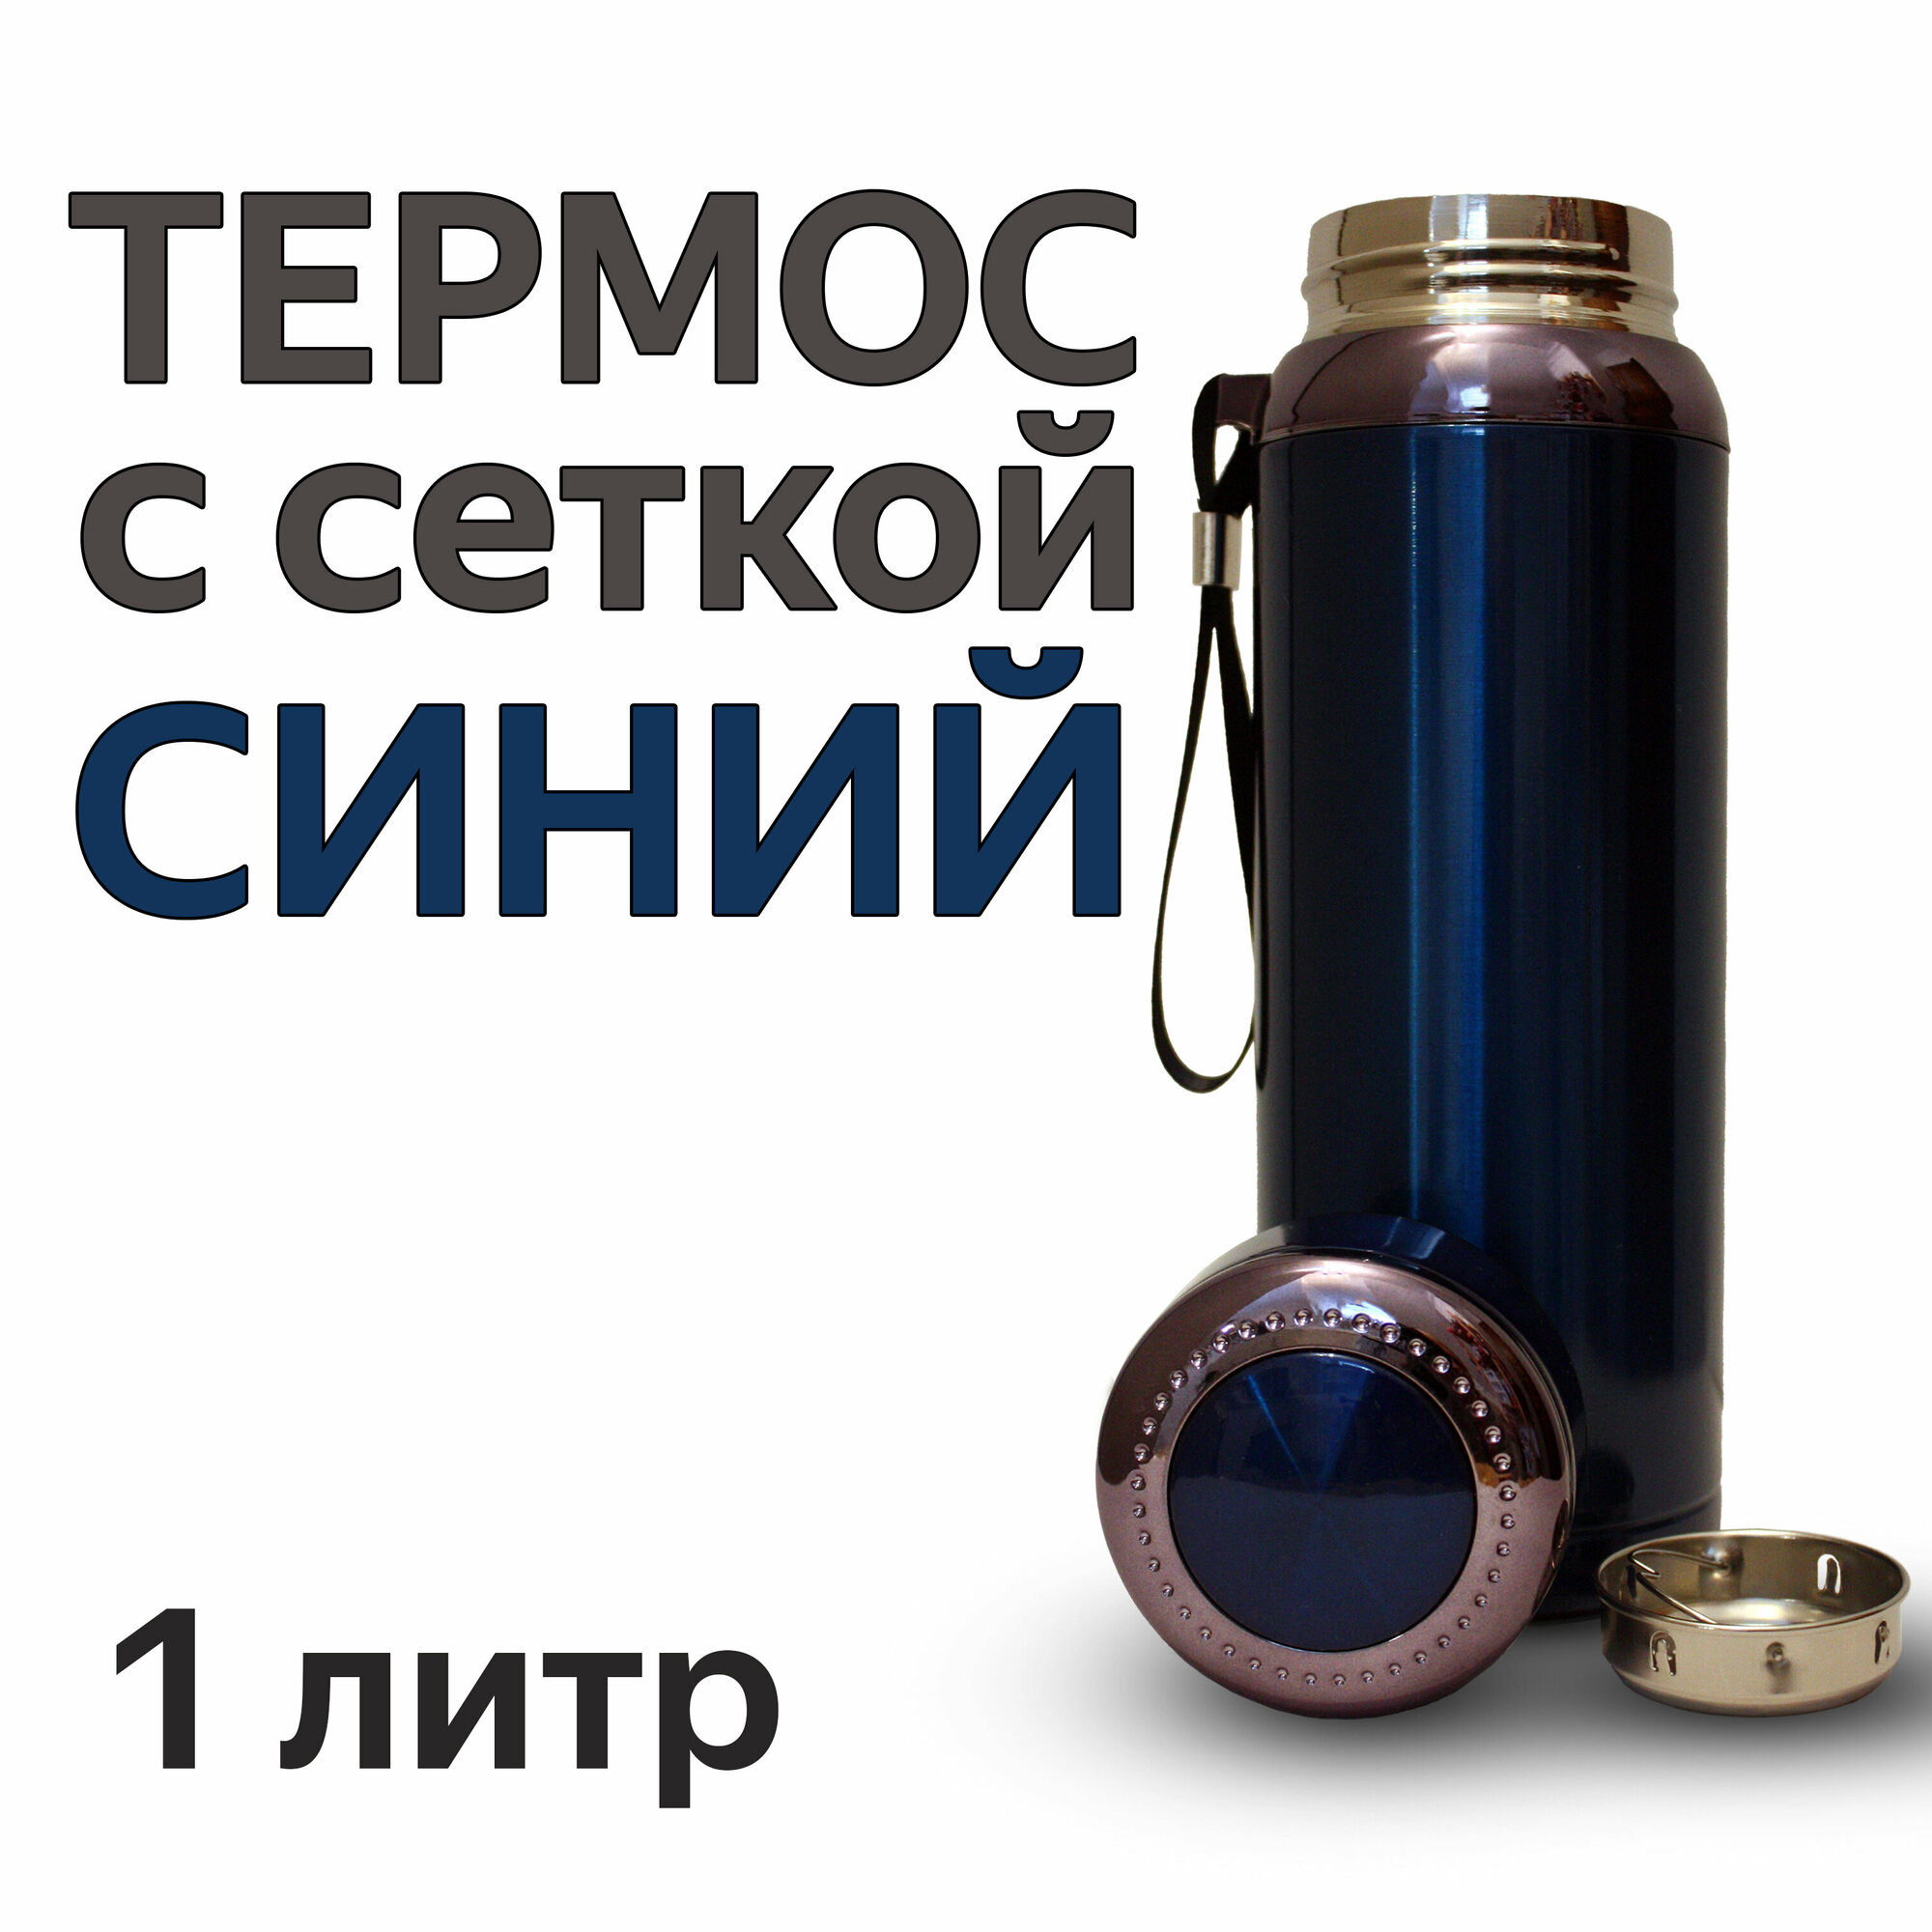 Термос для напитков из нержавеющей стали со съемной сеткой-фильтром 1 литр VACUUM цвет синий